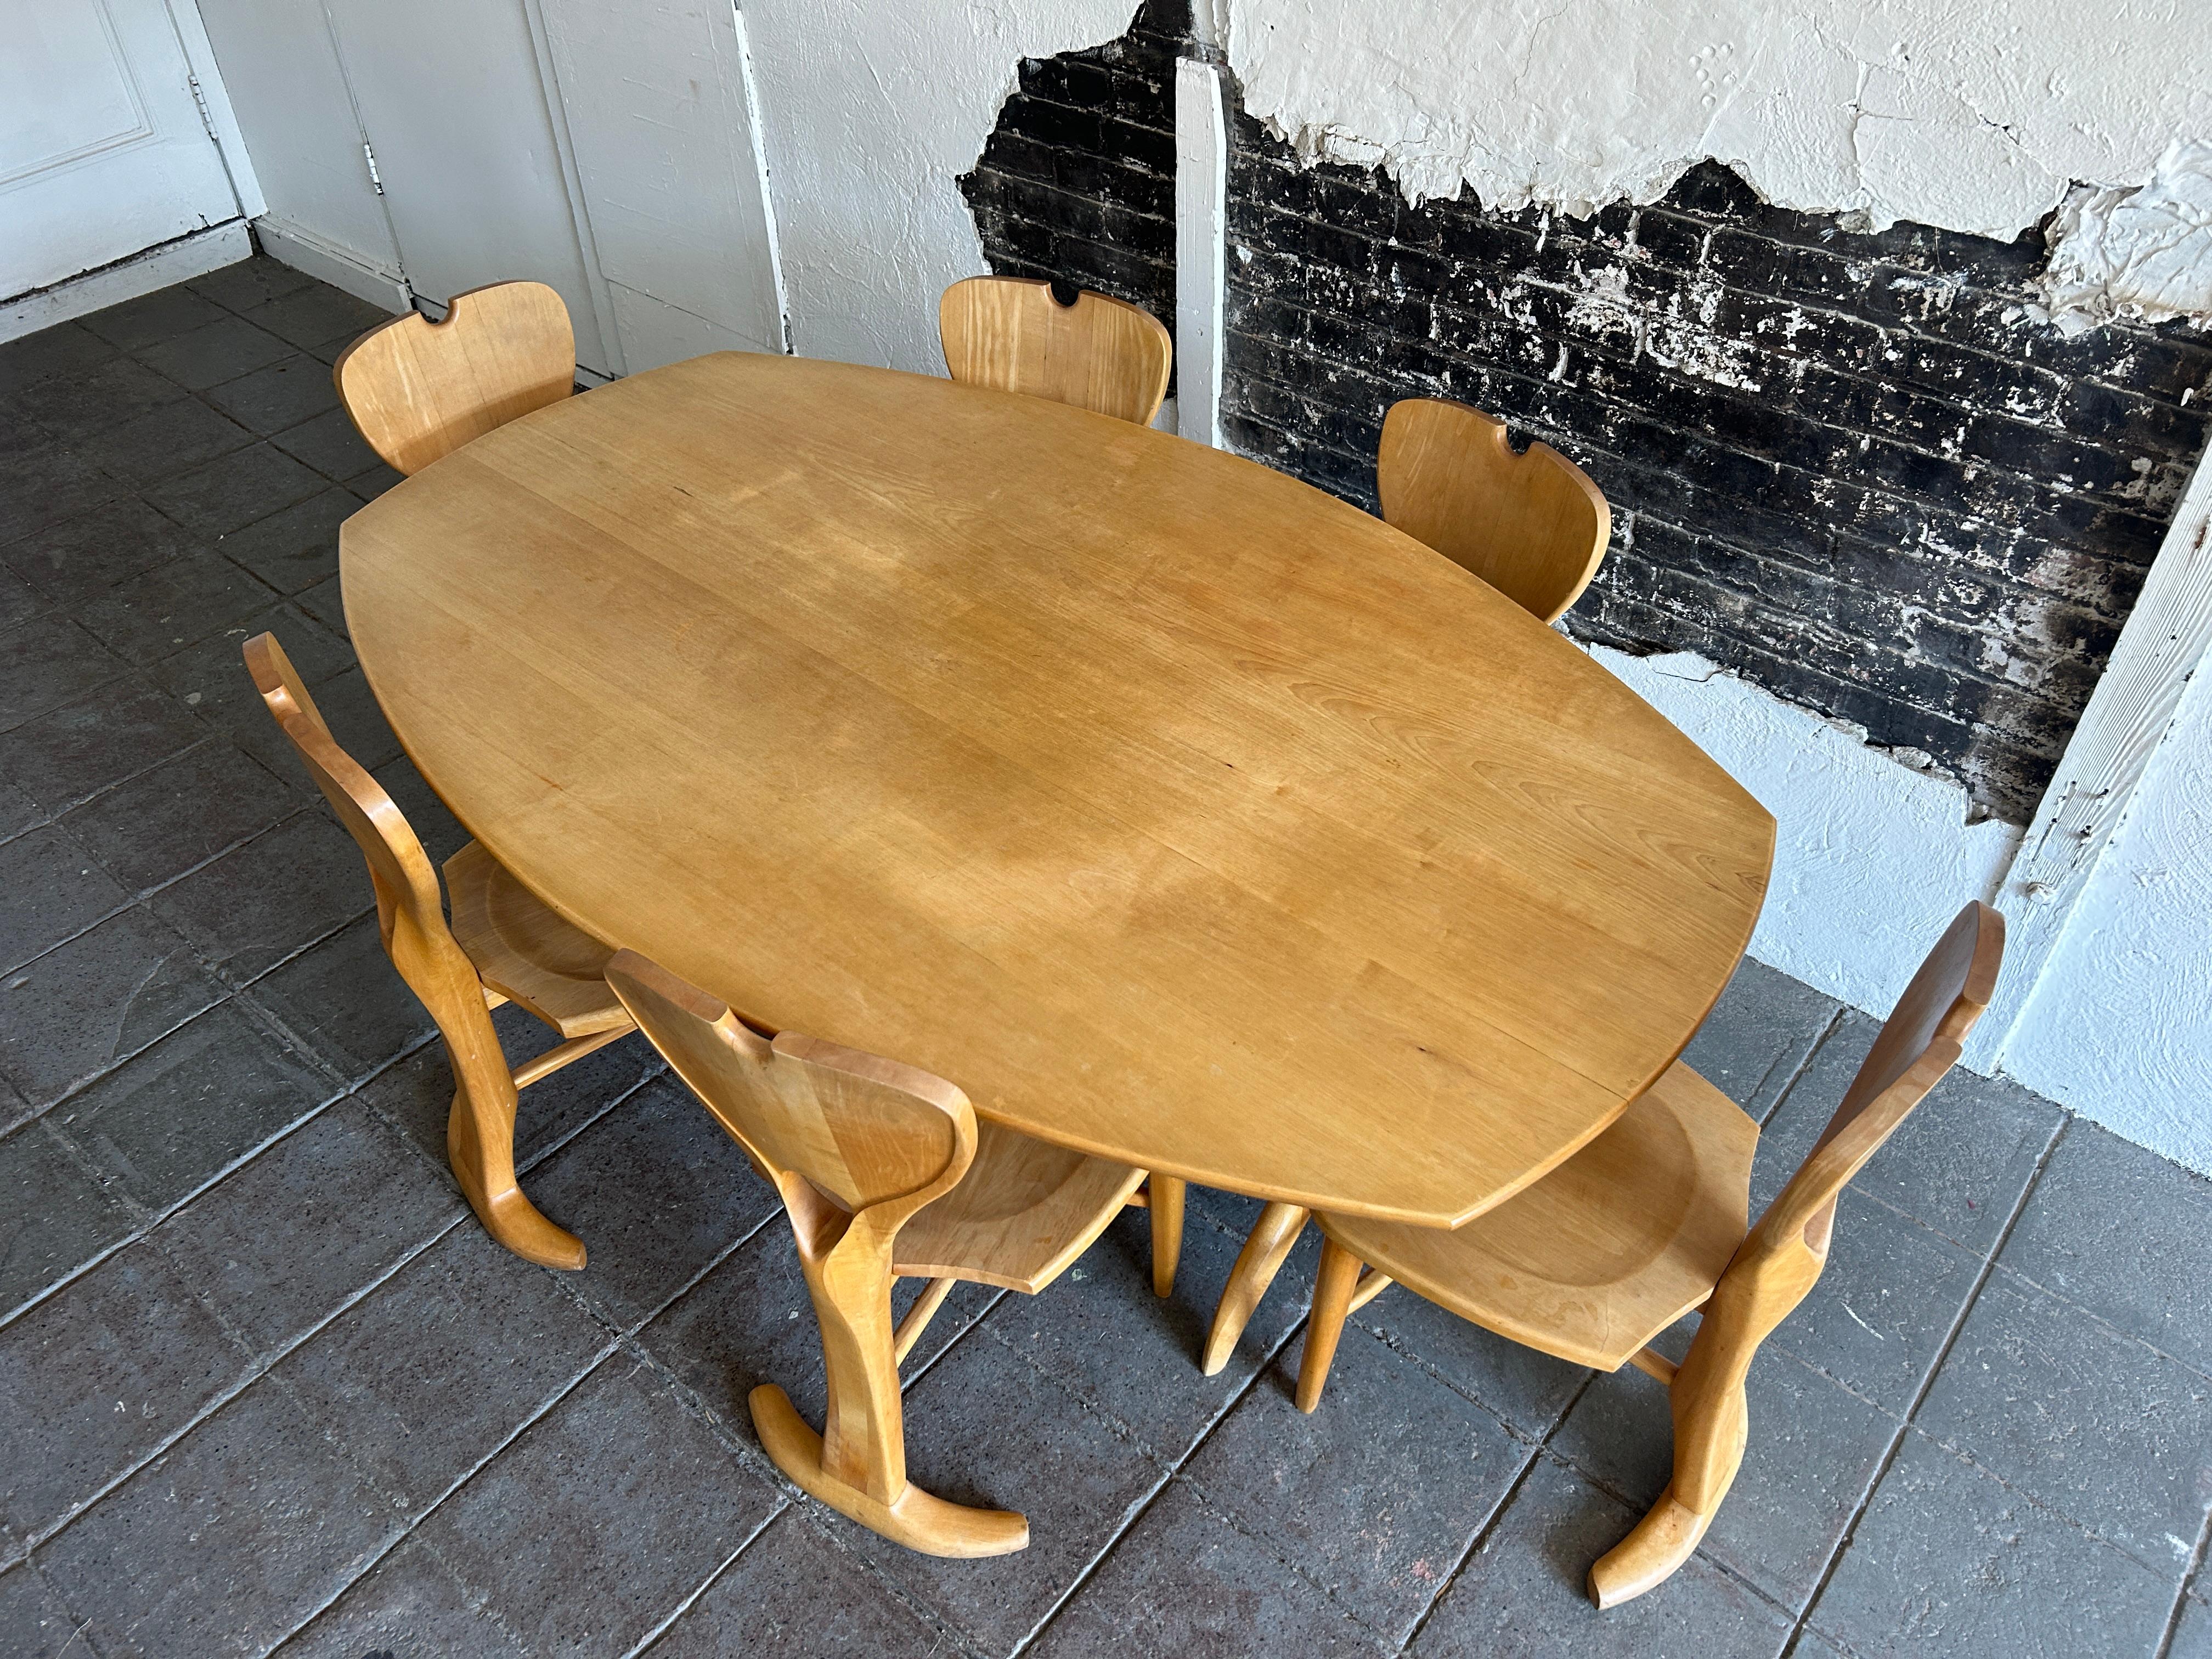 Einzigartiger amerikanischer Studio Craft Esstisch aus blonder Birke mit 6 Stühlen. Schöne geschnitzte Holzstühle und Esstisch. Der oval geformte Esstisch mit detailliert skulpturiertem Sockel besteht aus massivem blondem Birkenholz. Die (6)